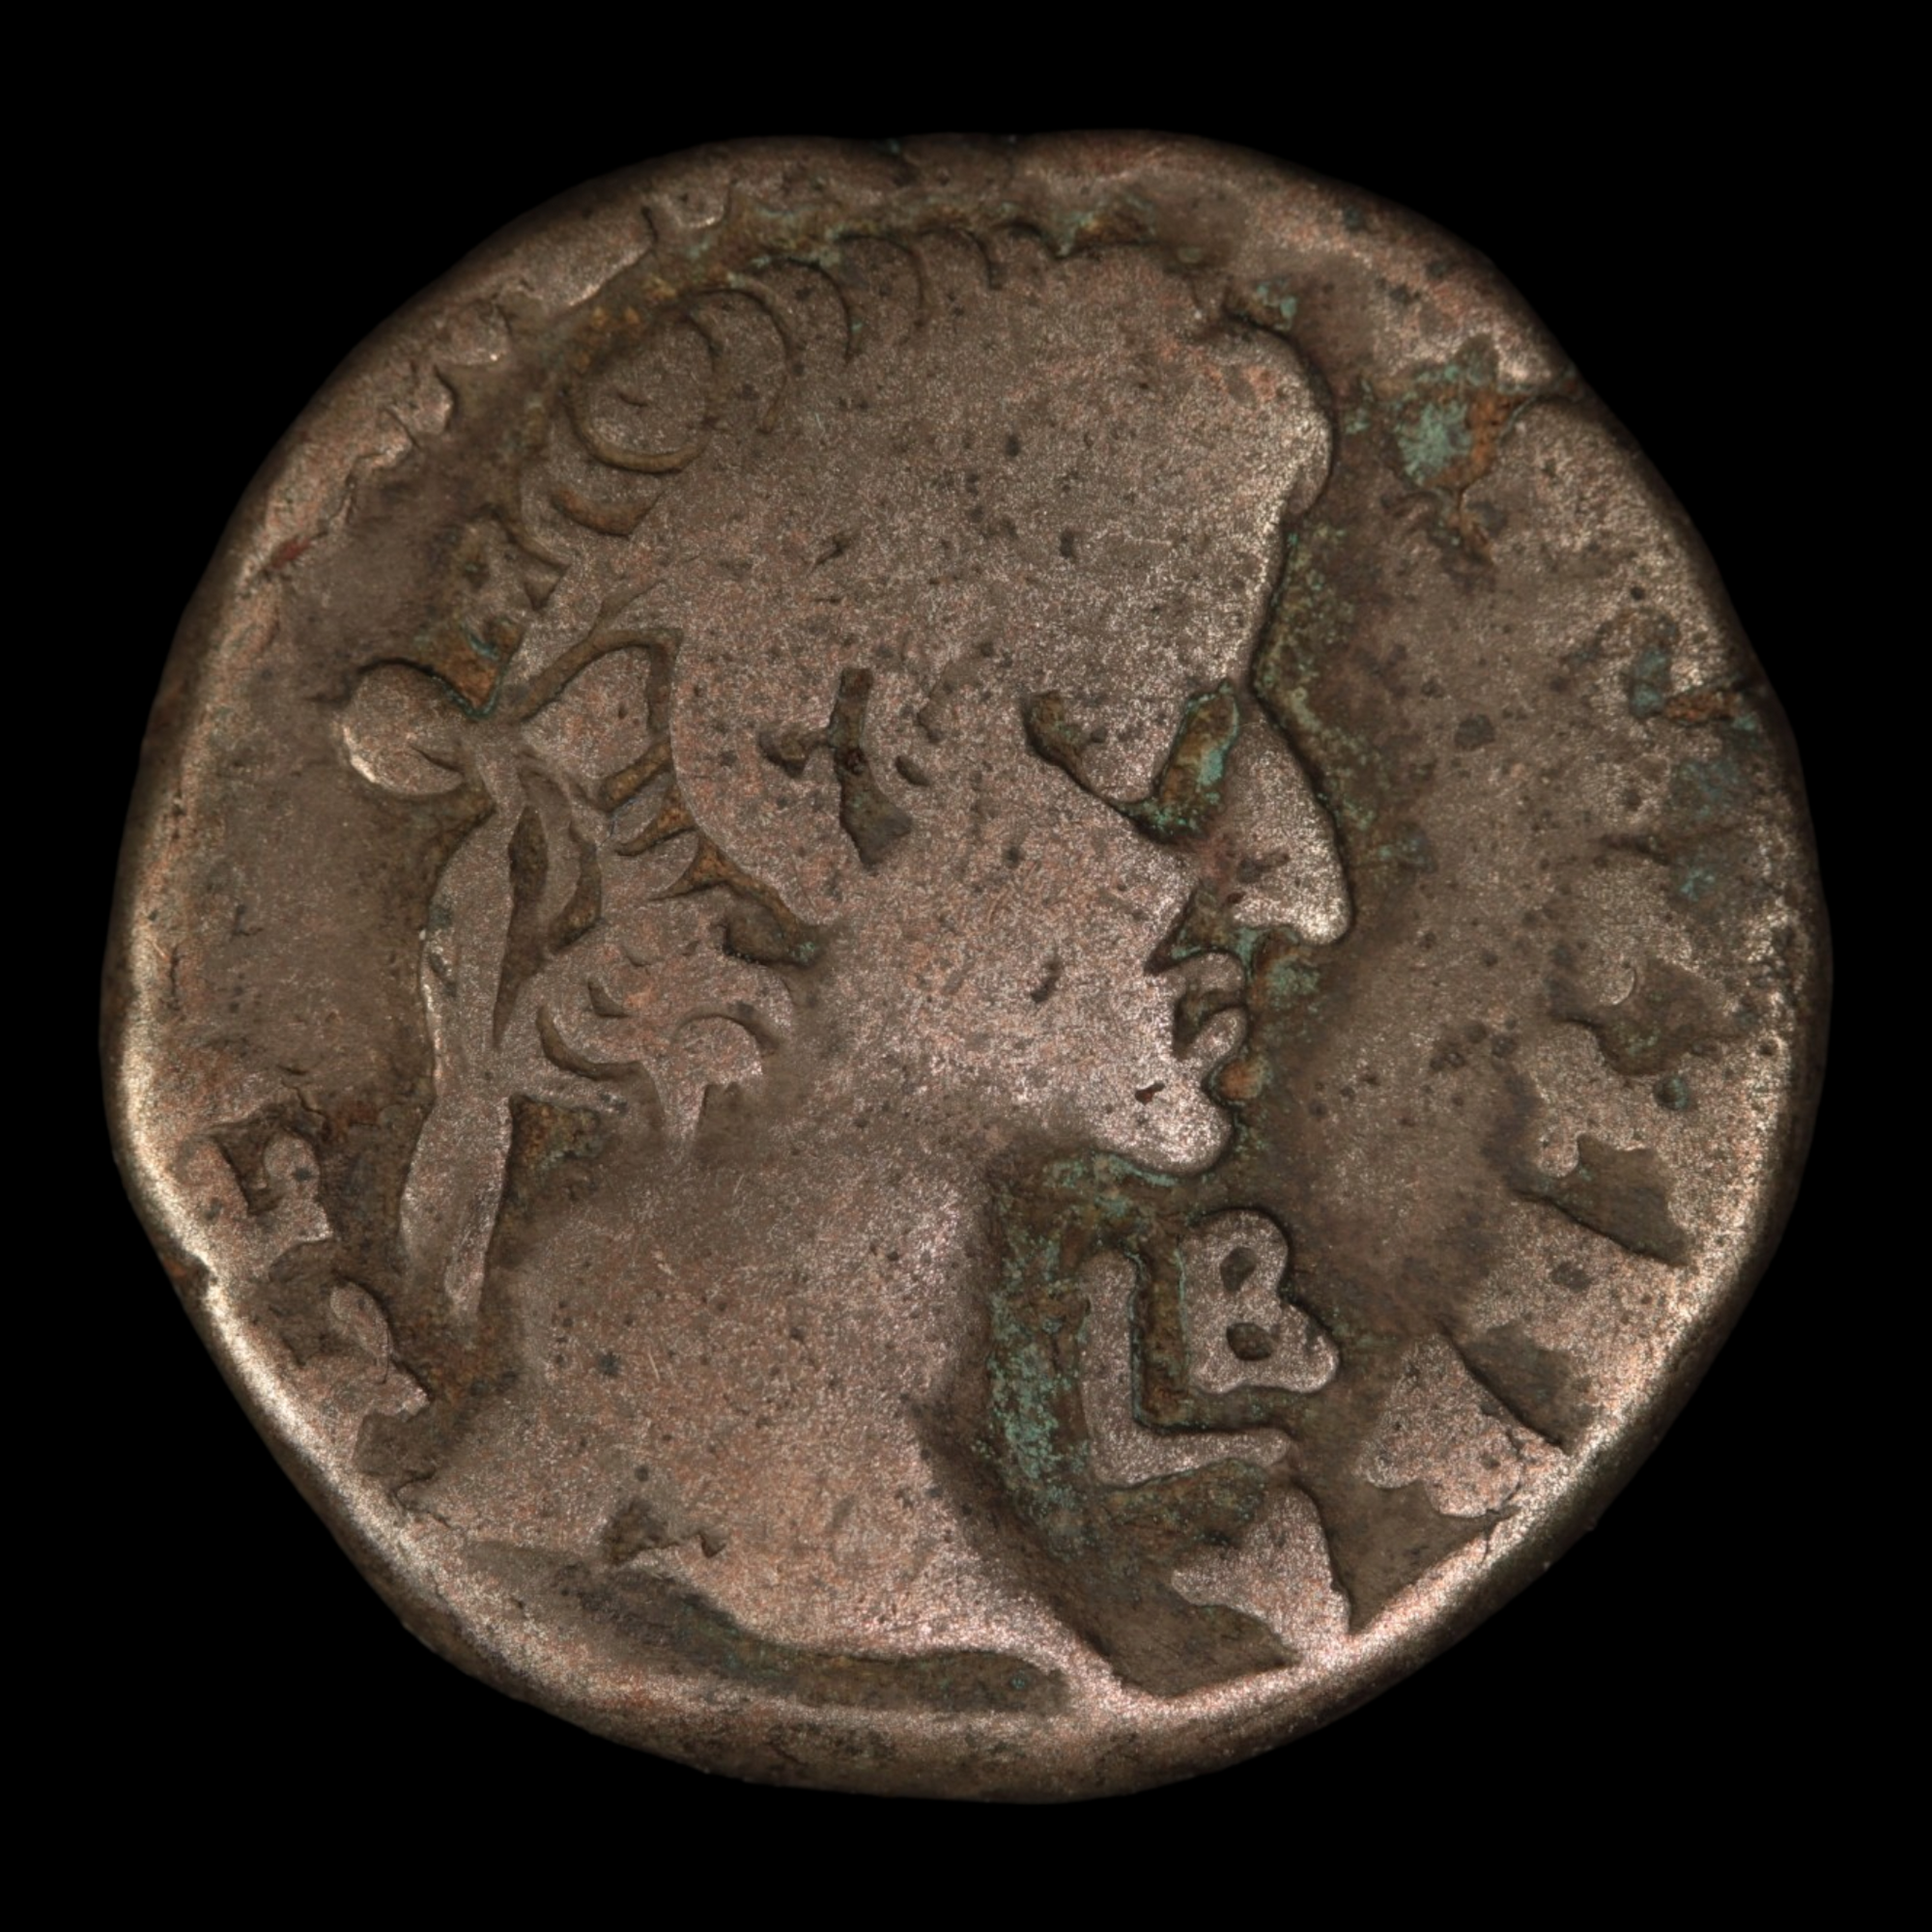 Roman Egypt, Emperor Galba Tetradrachm - c. 68 to 69 CE - Alexandria, Egypt - 7/26/23 Auction